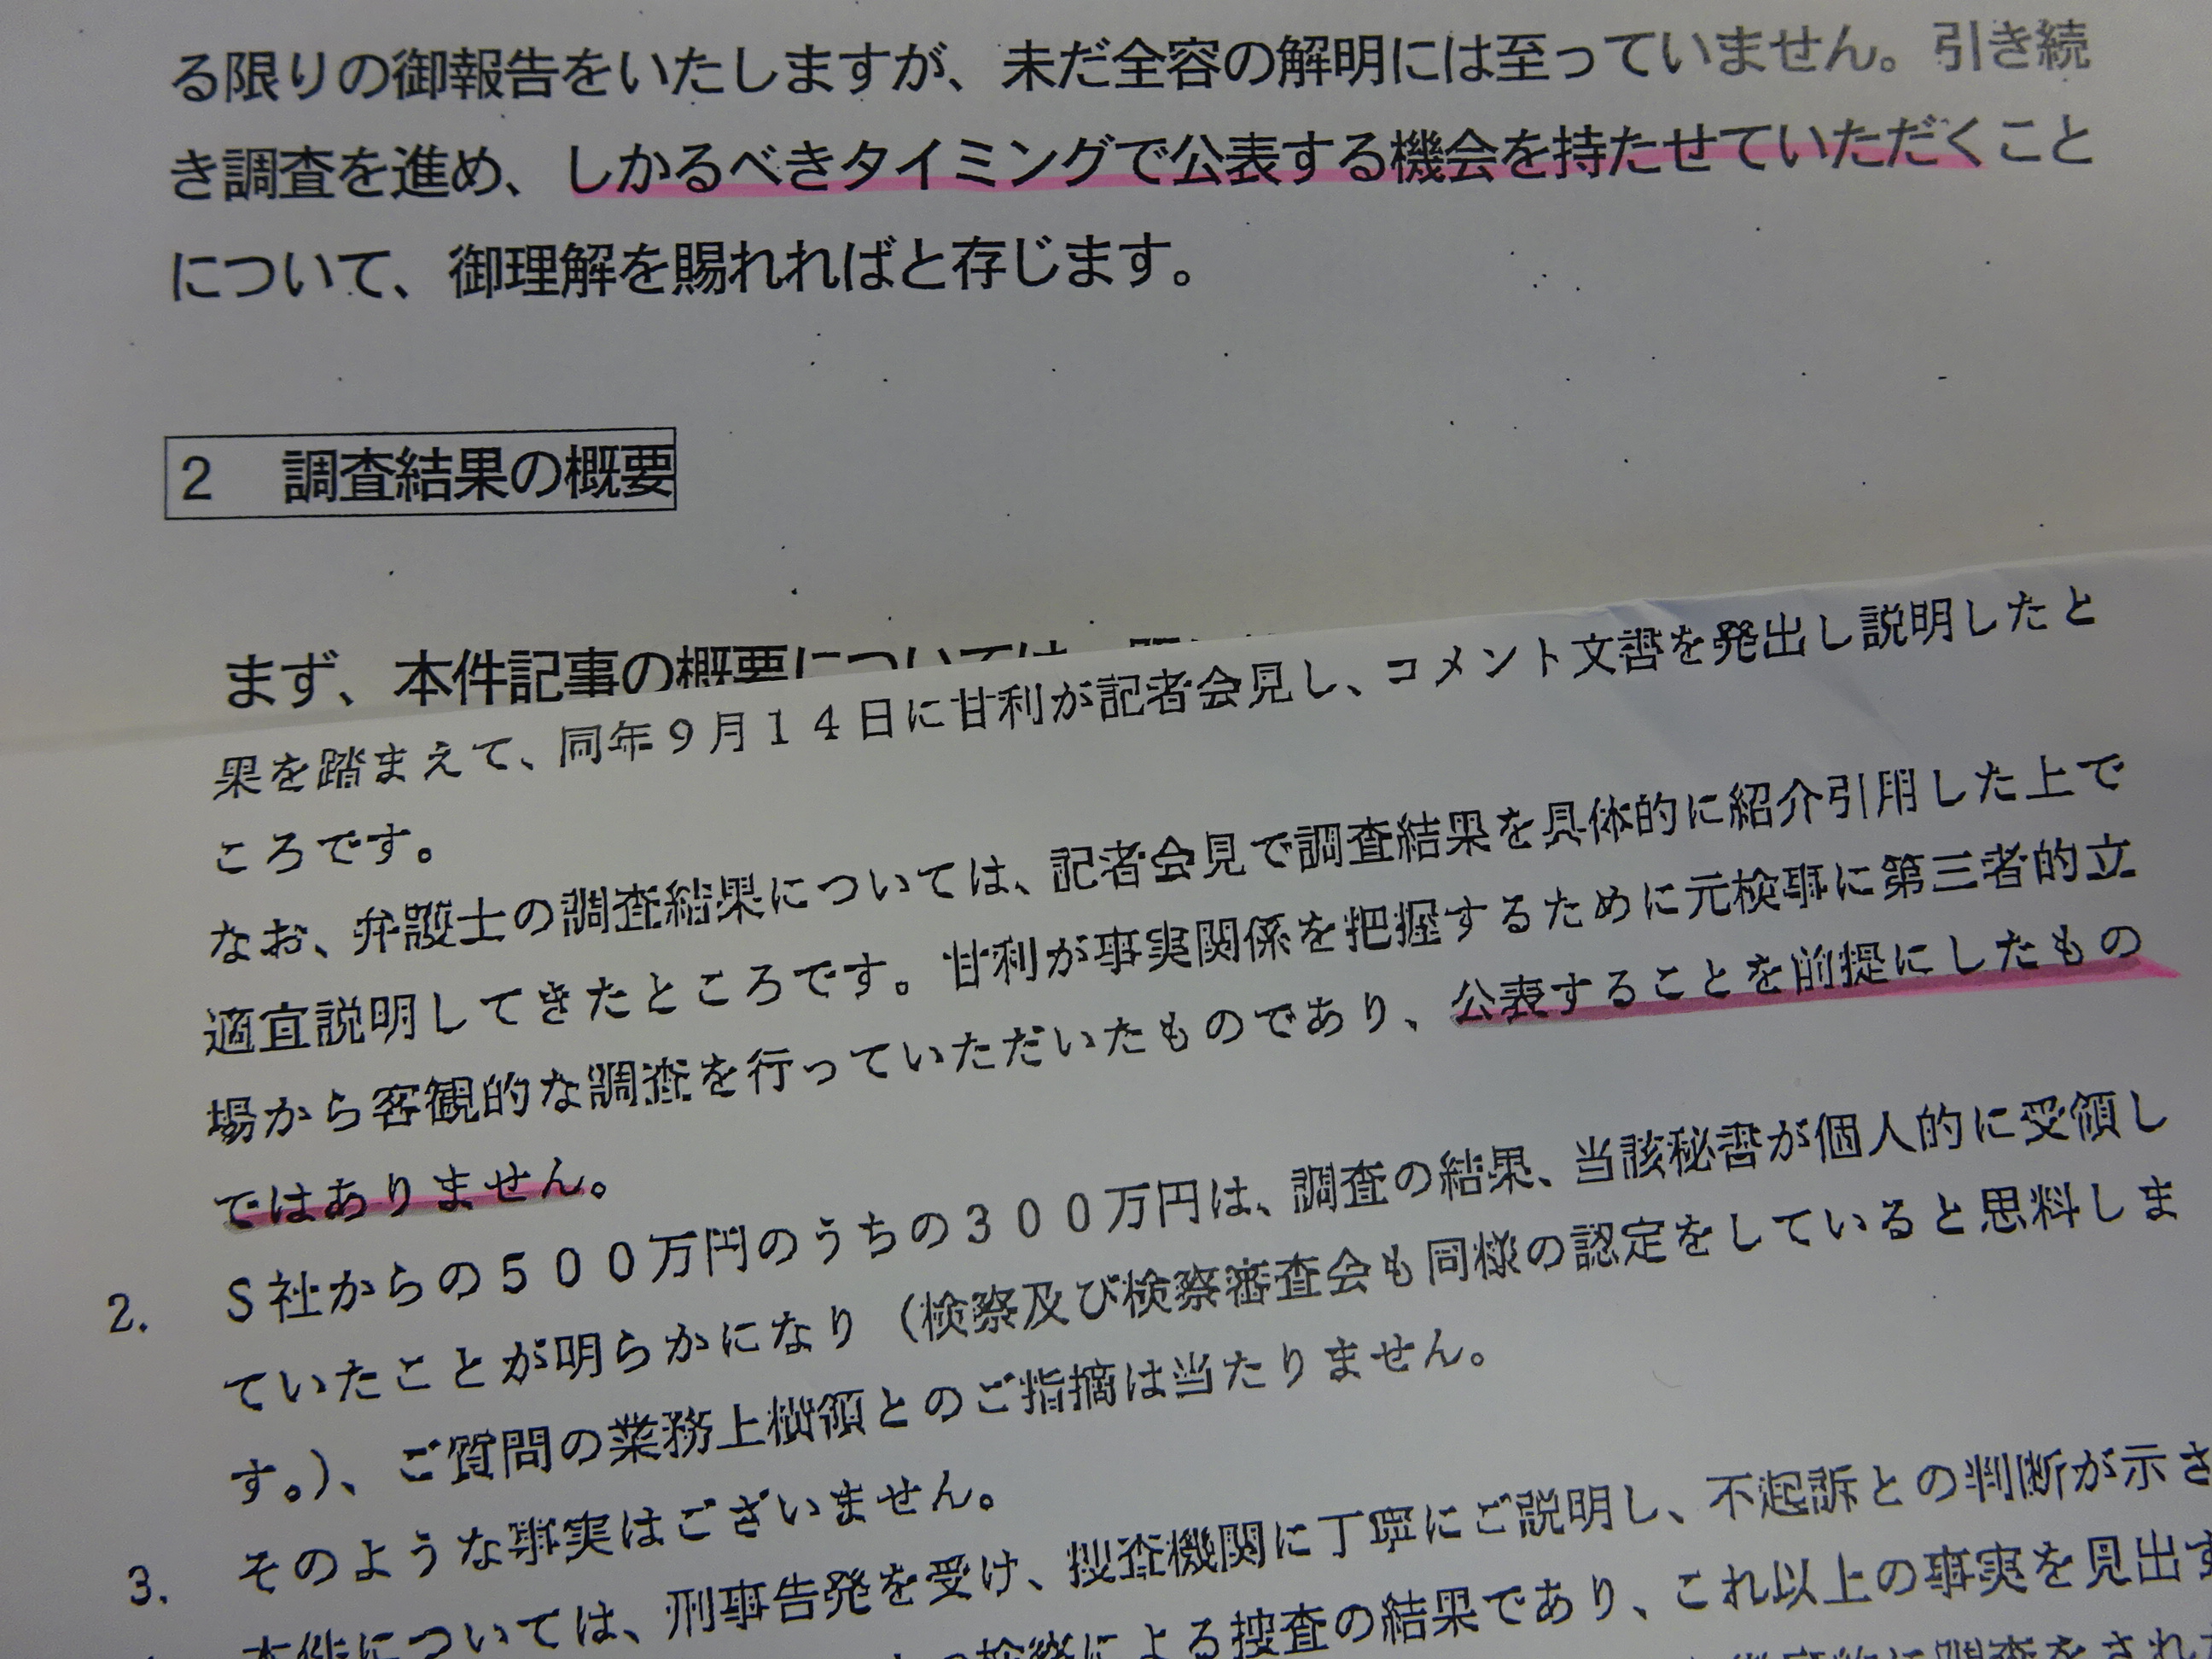 https://www.inoue-satoshi.com/diary/DSC02558.JPG